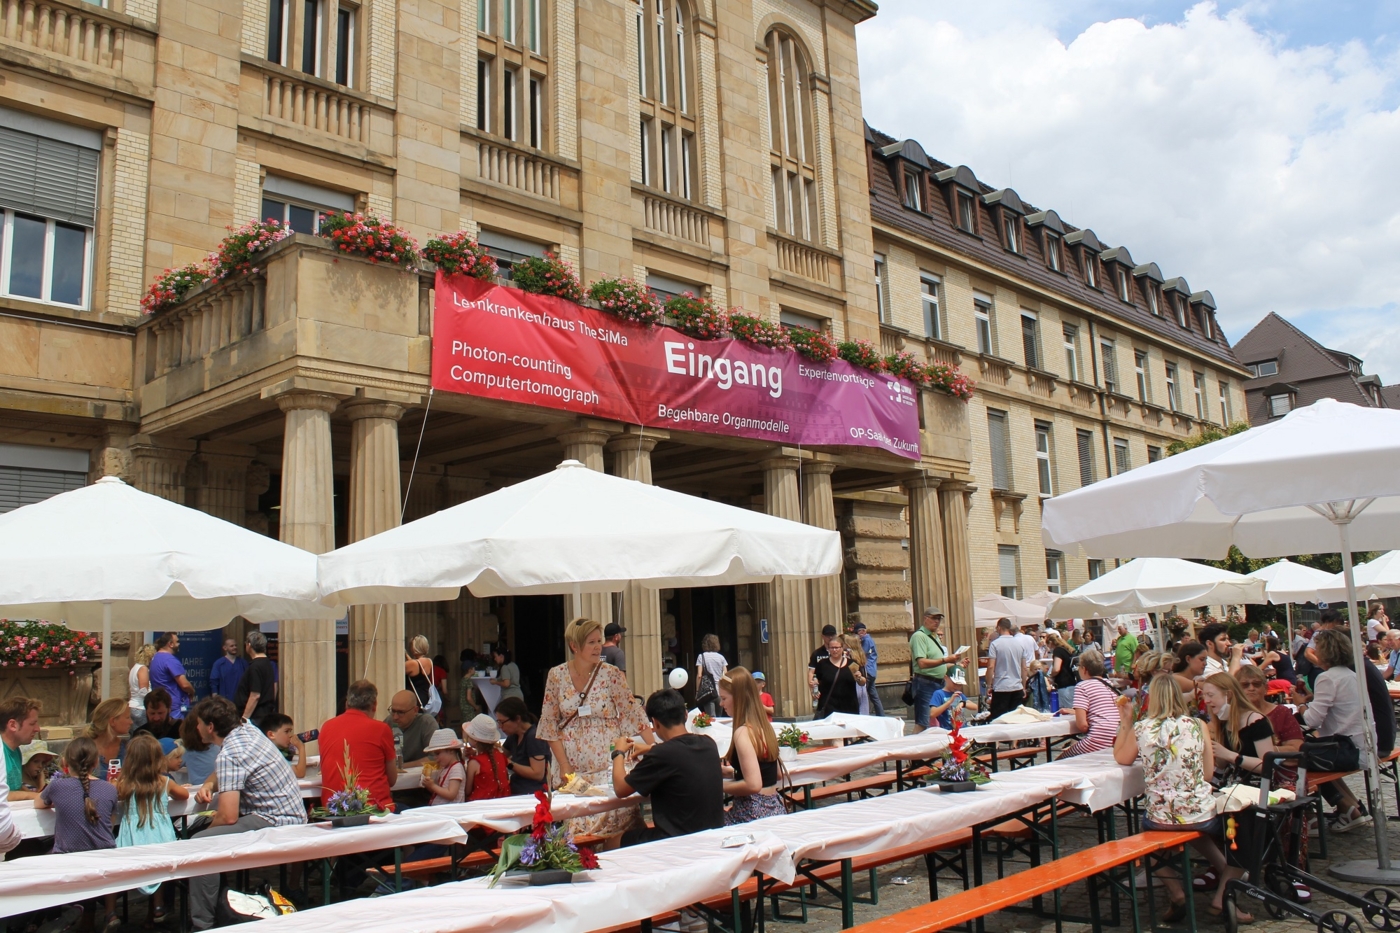 Rund 5.000 Besuchende strömten am 9. Juli zur Universitätsmedizin Mannheim. Es wurde ein Familienfest mit vielen Attraktionen geboten.